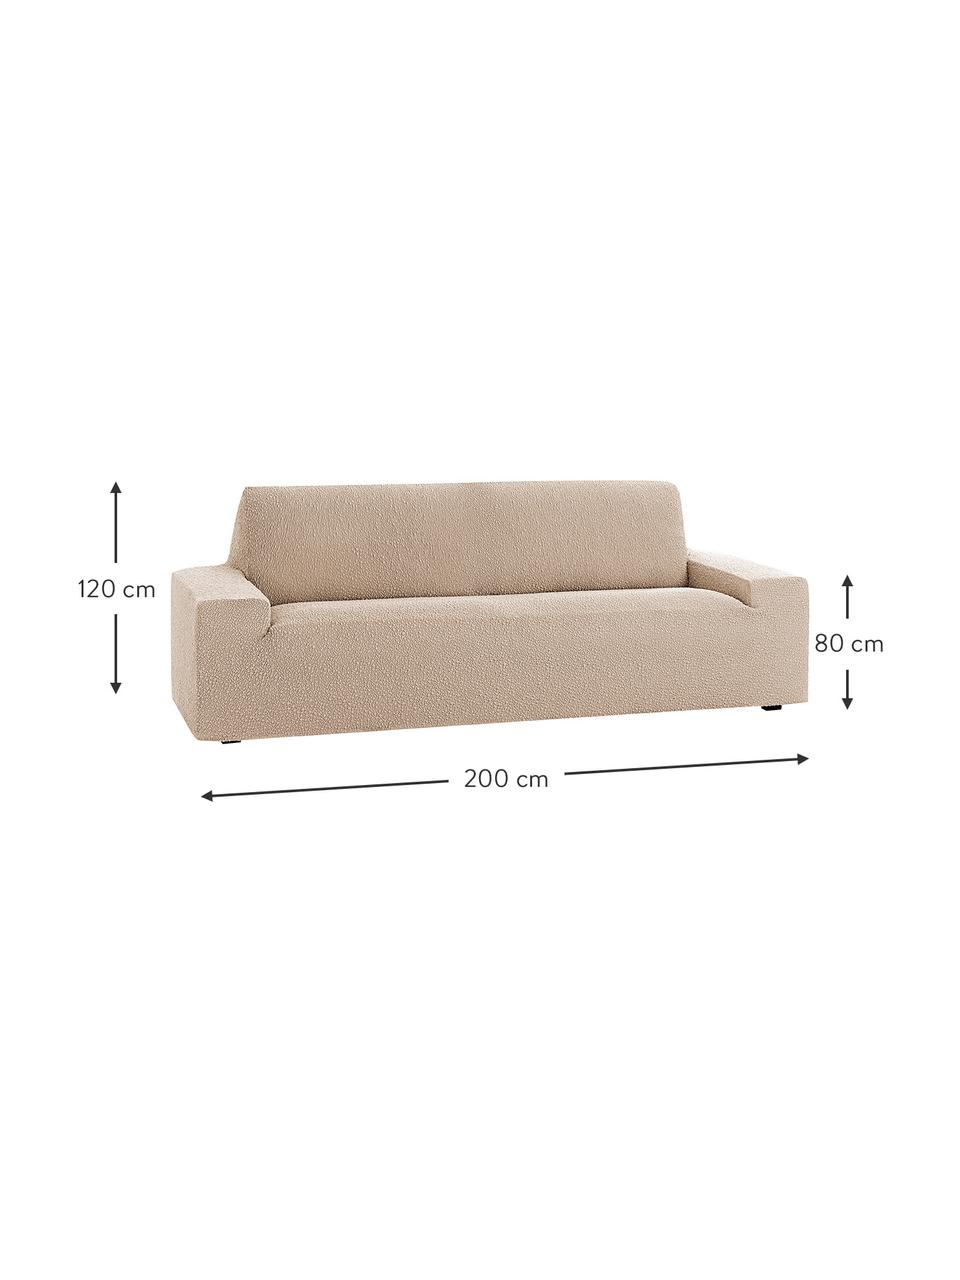 Pokrowiec na sofę Roc, 55% poliester, 35% bawełna, 10% elastomer, Beżowy, S 200 x W 120 cm